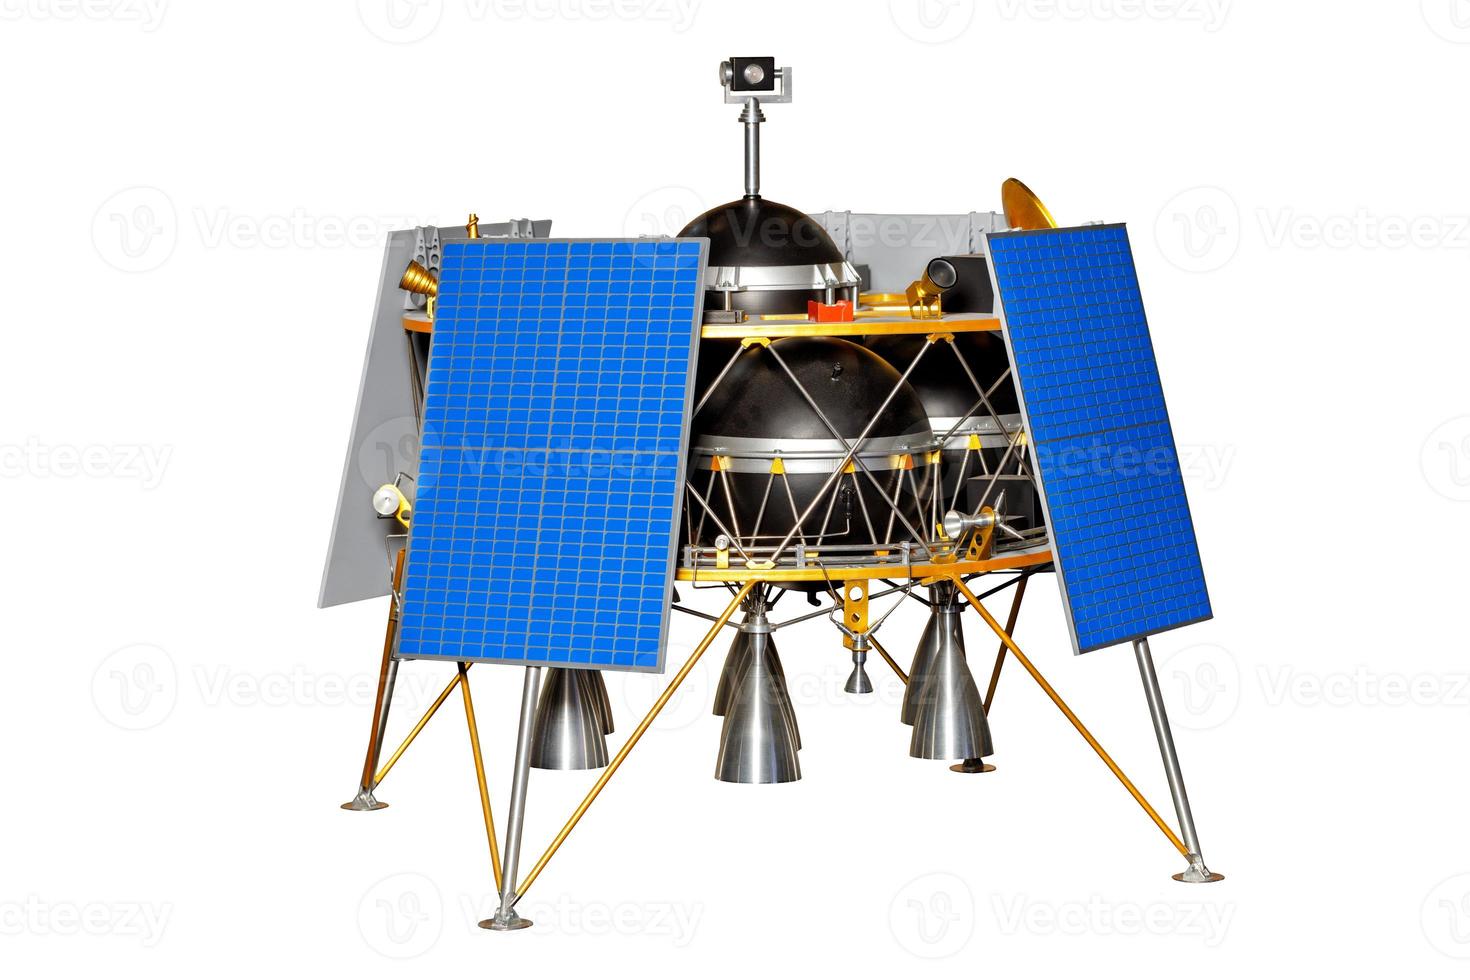 un lander lunare volante per l'esplorazione della superficie lunare in diversi luoghi durante una spedizione. foto